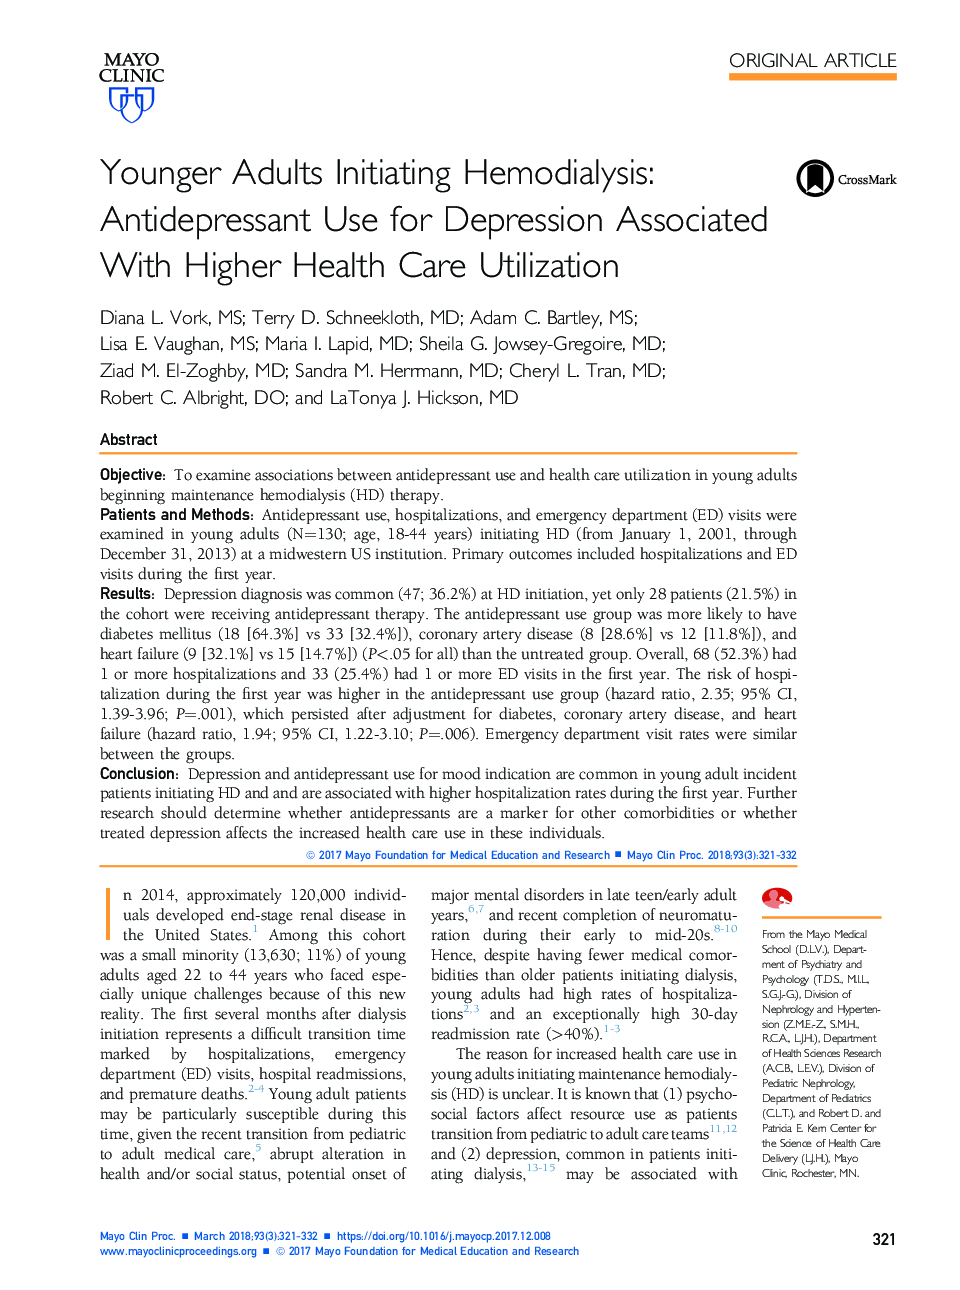 بزرگسالان جوانتر آغاز همودیالیز: استفاده از داروهای ضد افسردگی برای افسردگی همراه با استفاده از مراقبت های بهداشتی 